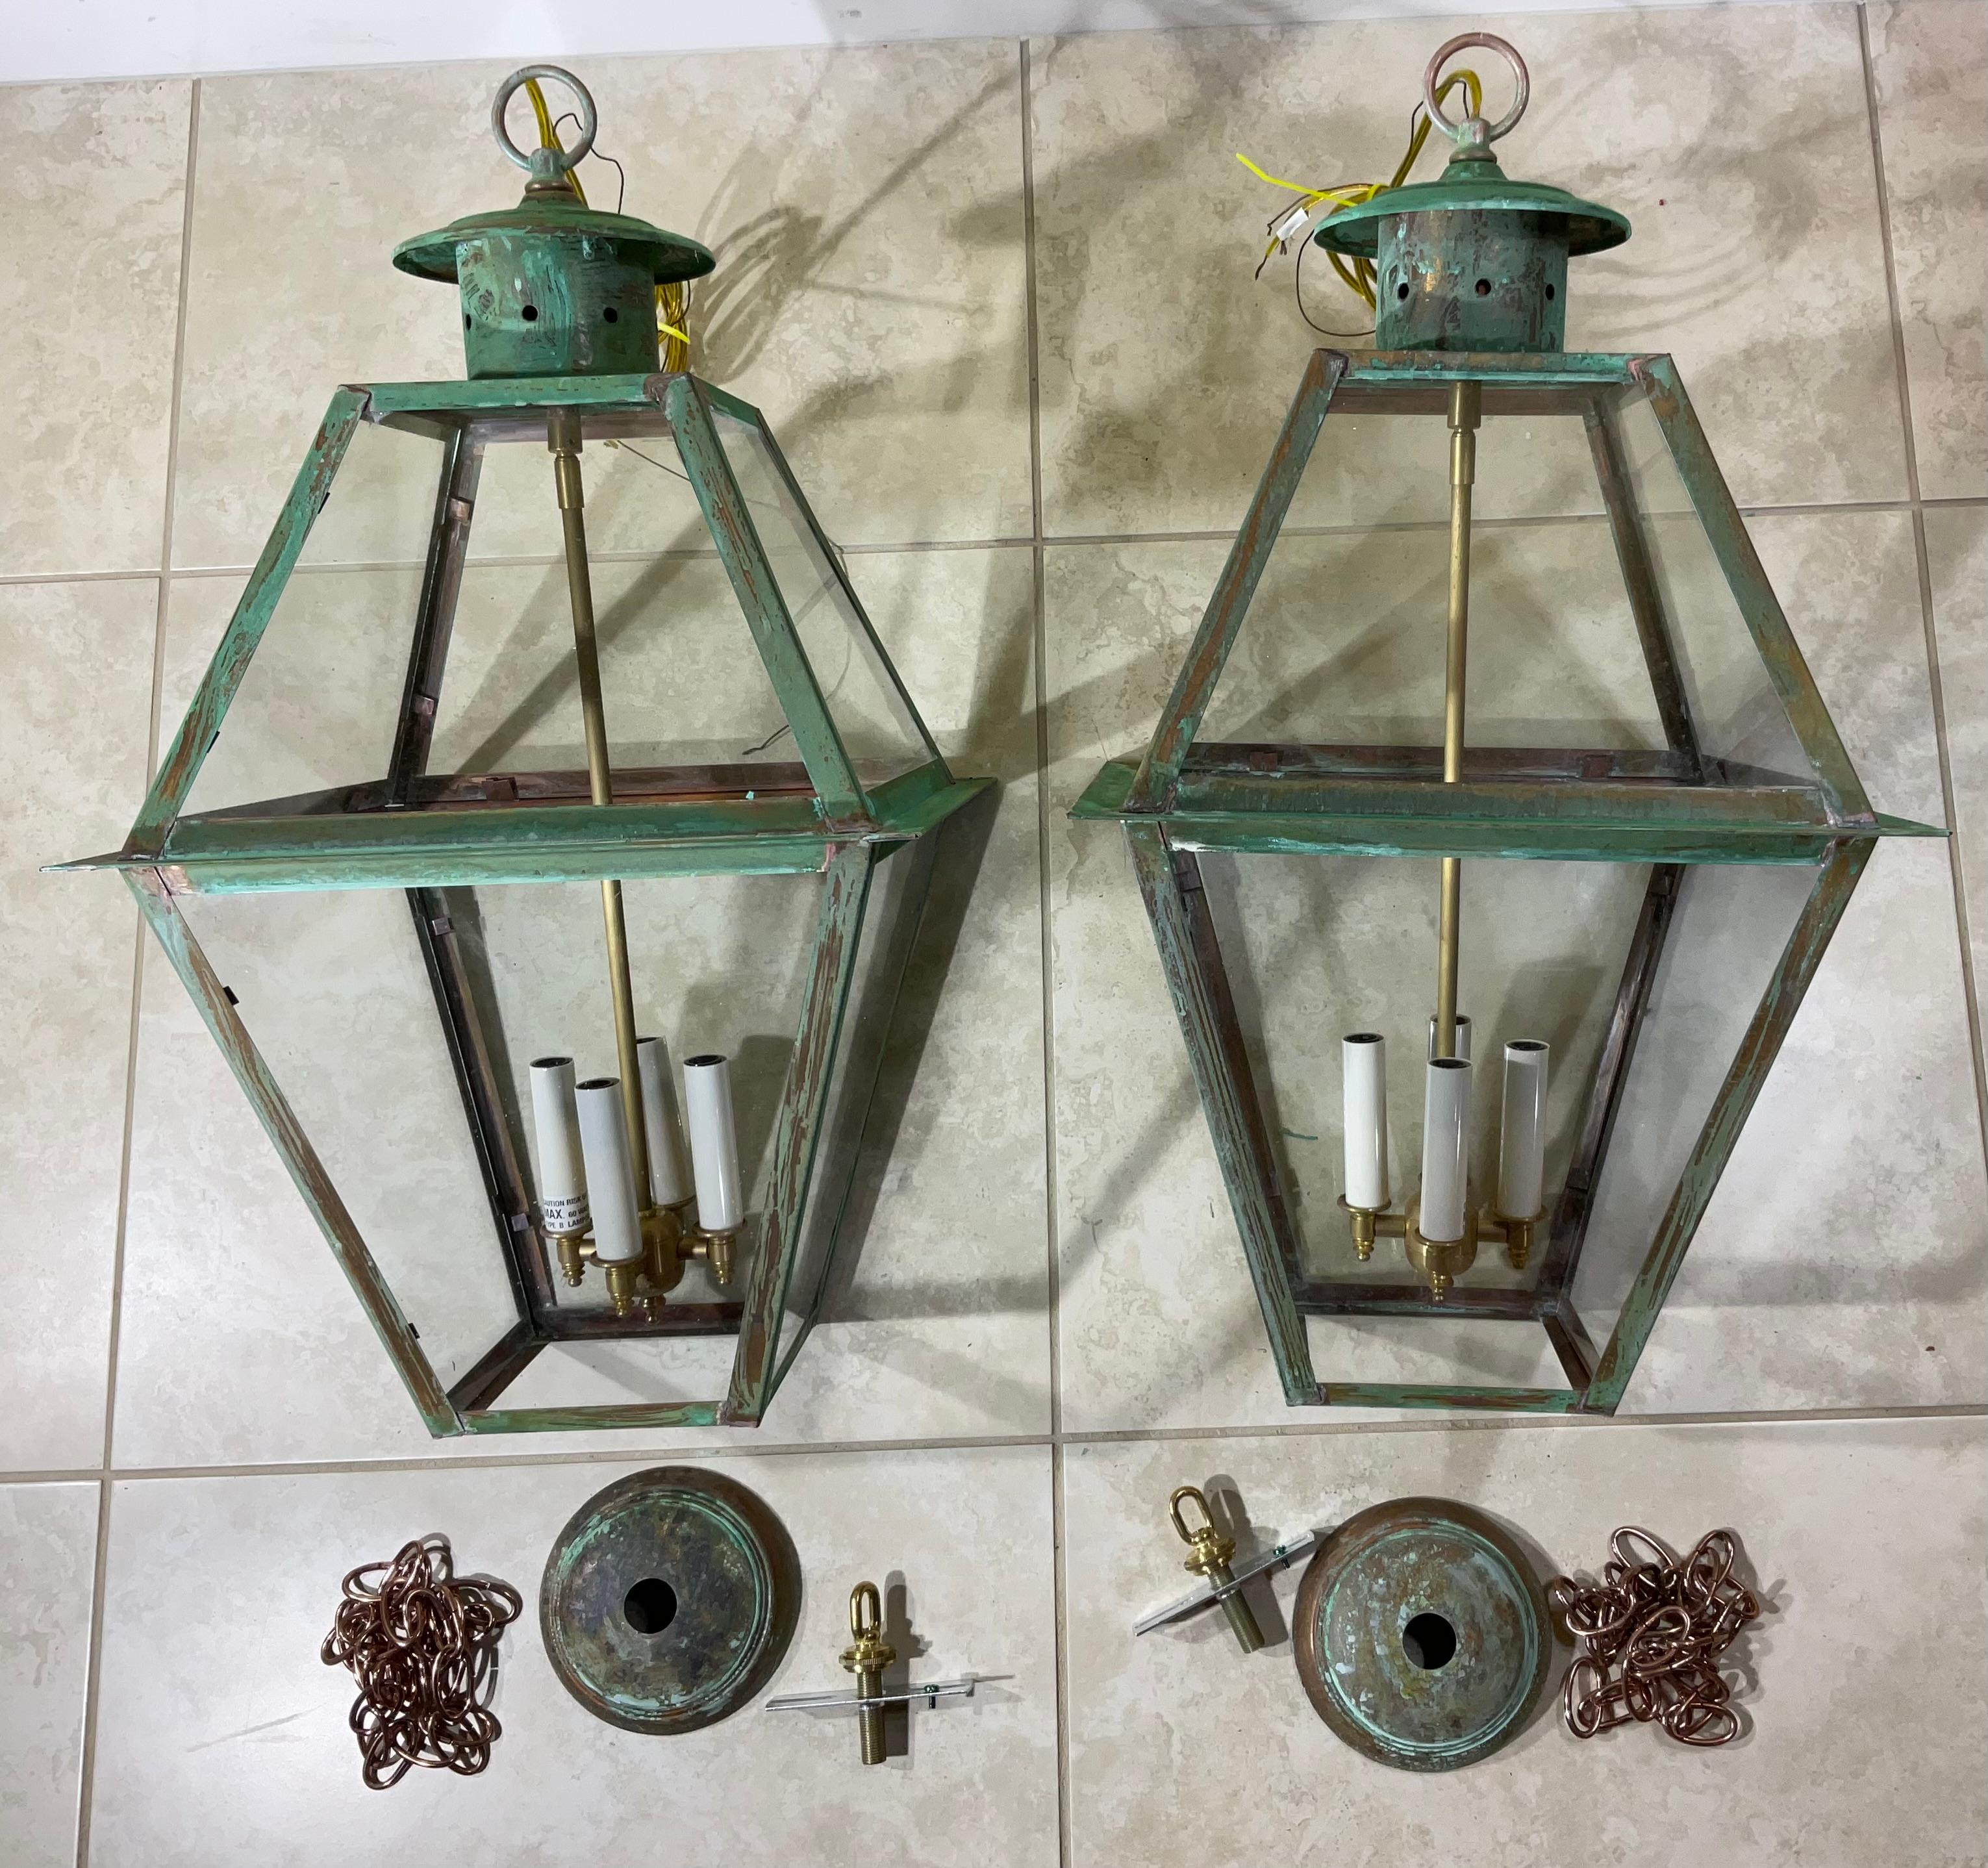 Exceptionnelle paire de lanternes suspendues sur quatre côtés, fabriquées à la main en cuivre massif et tige en laiton, avec quatre lampes de 60 watts, belle patine, convient aux endroits humides Fabriquées aux États-Unis, conformes au code